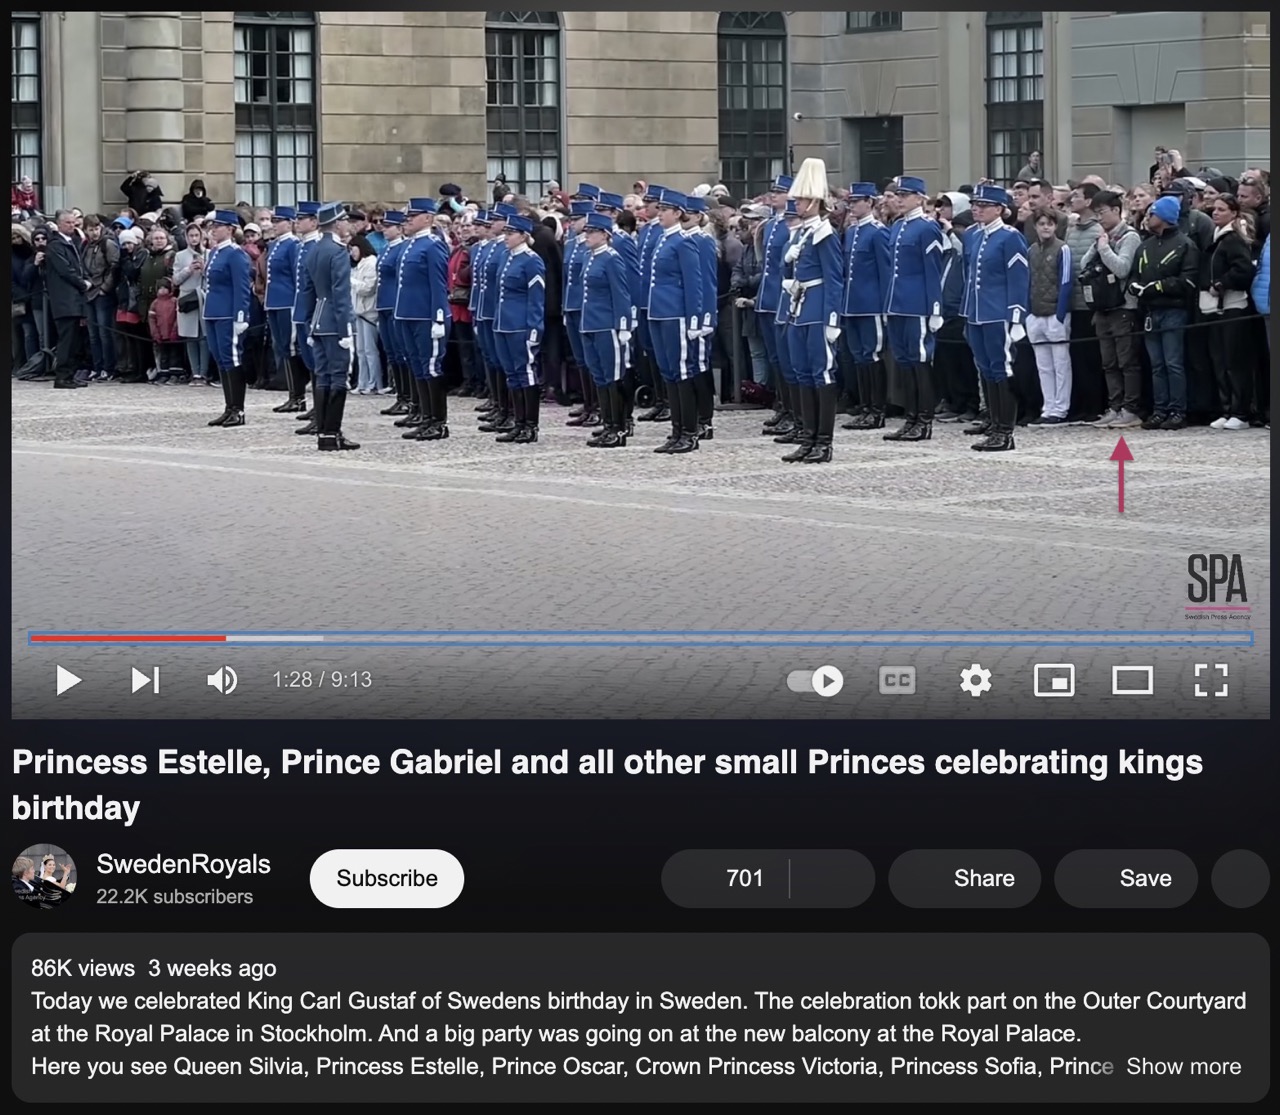 一张来自“瑞典皇室”官方号的 YouTube 视频页面截图，在一排士兵陈列的右边能看到我自己。